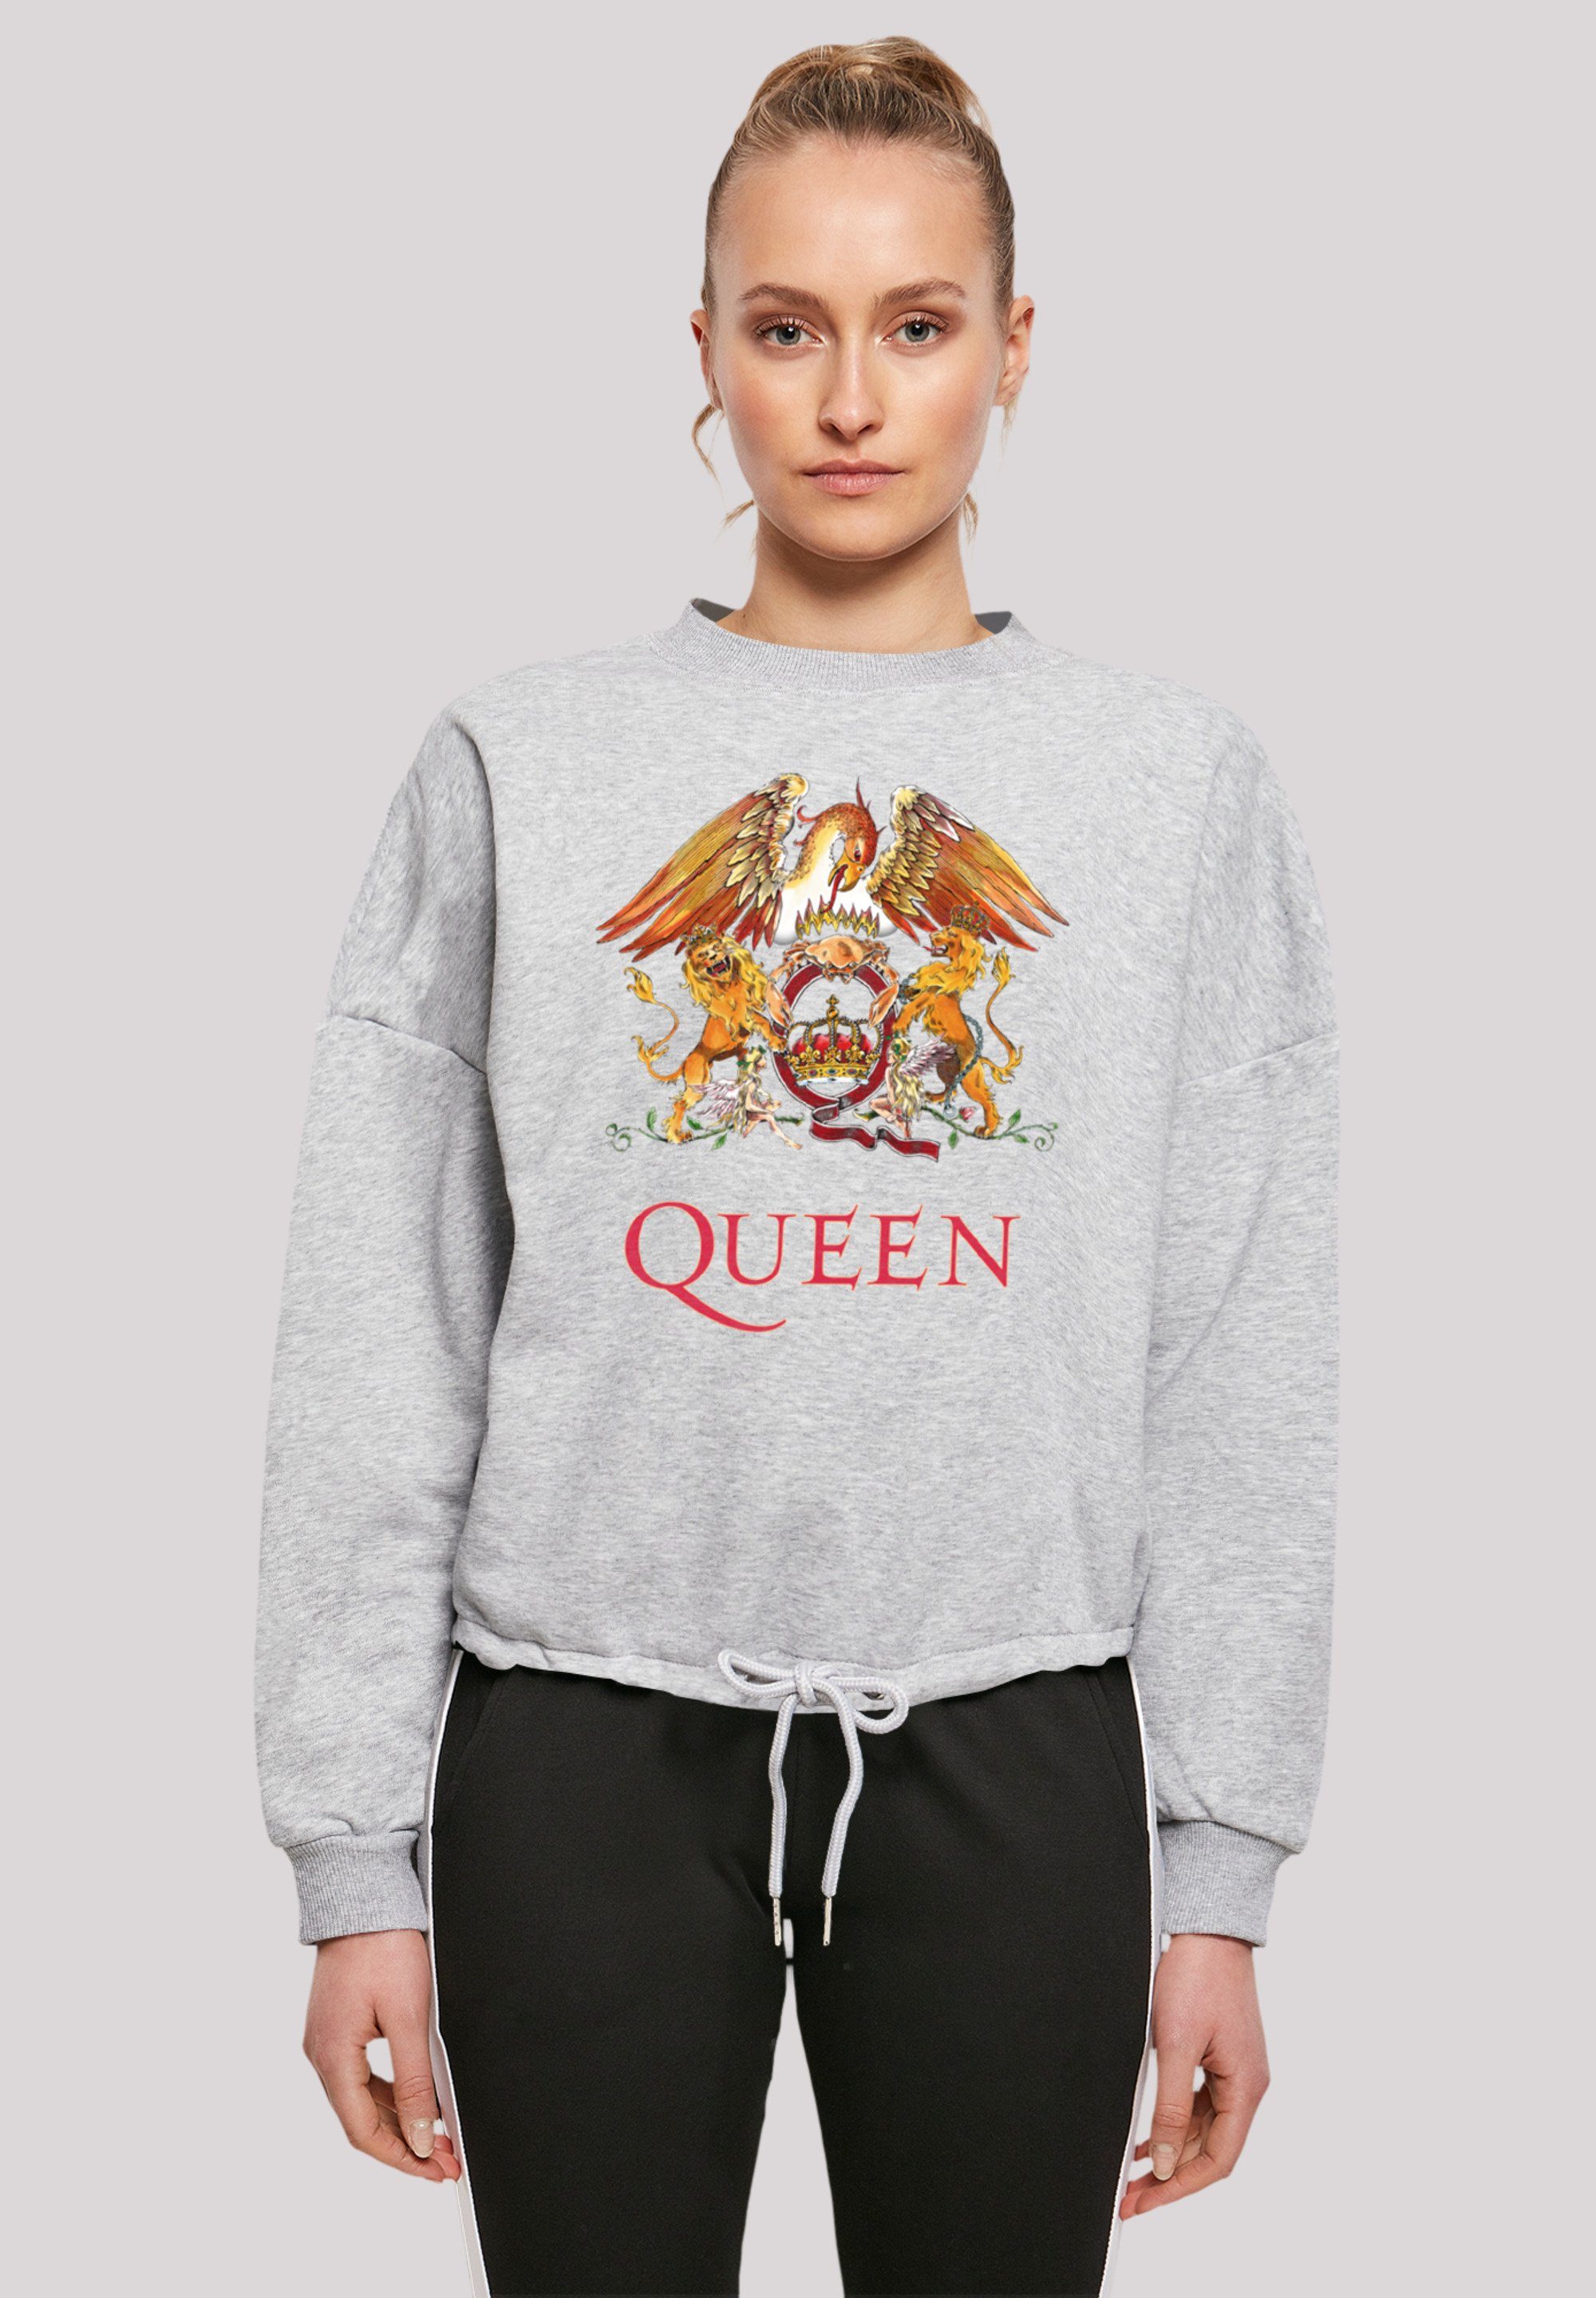 F4NT4STIC Sweatshirt Queen grey Classic Print heather Crest